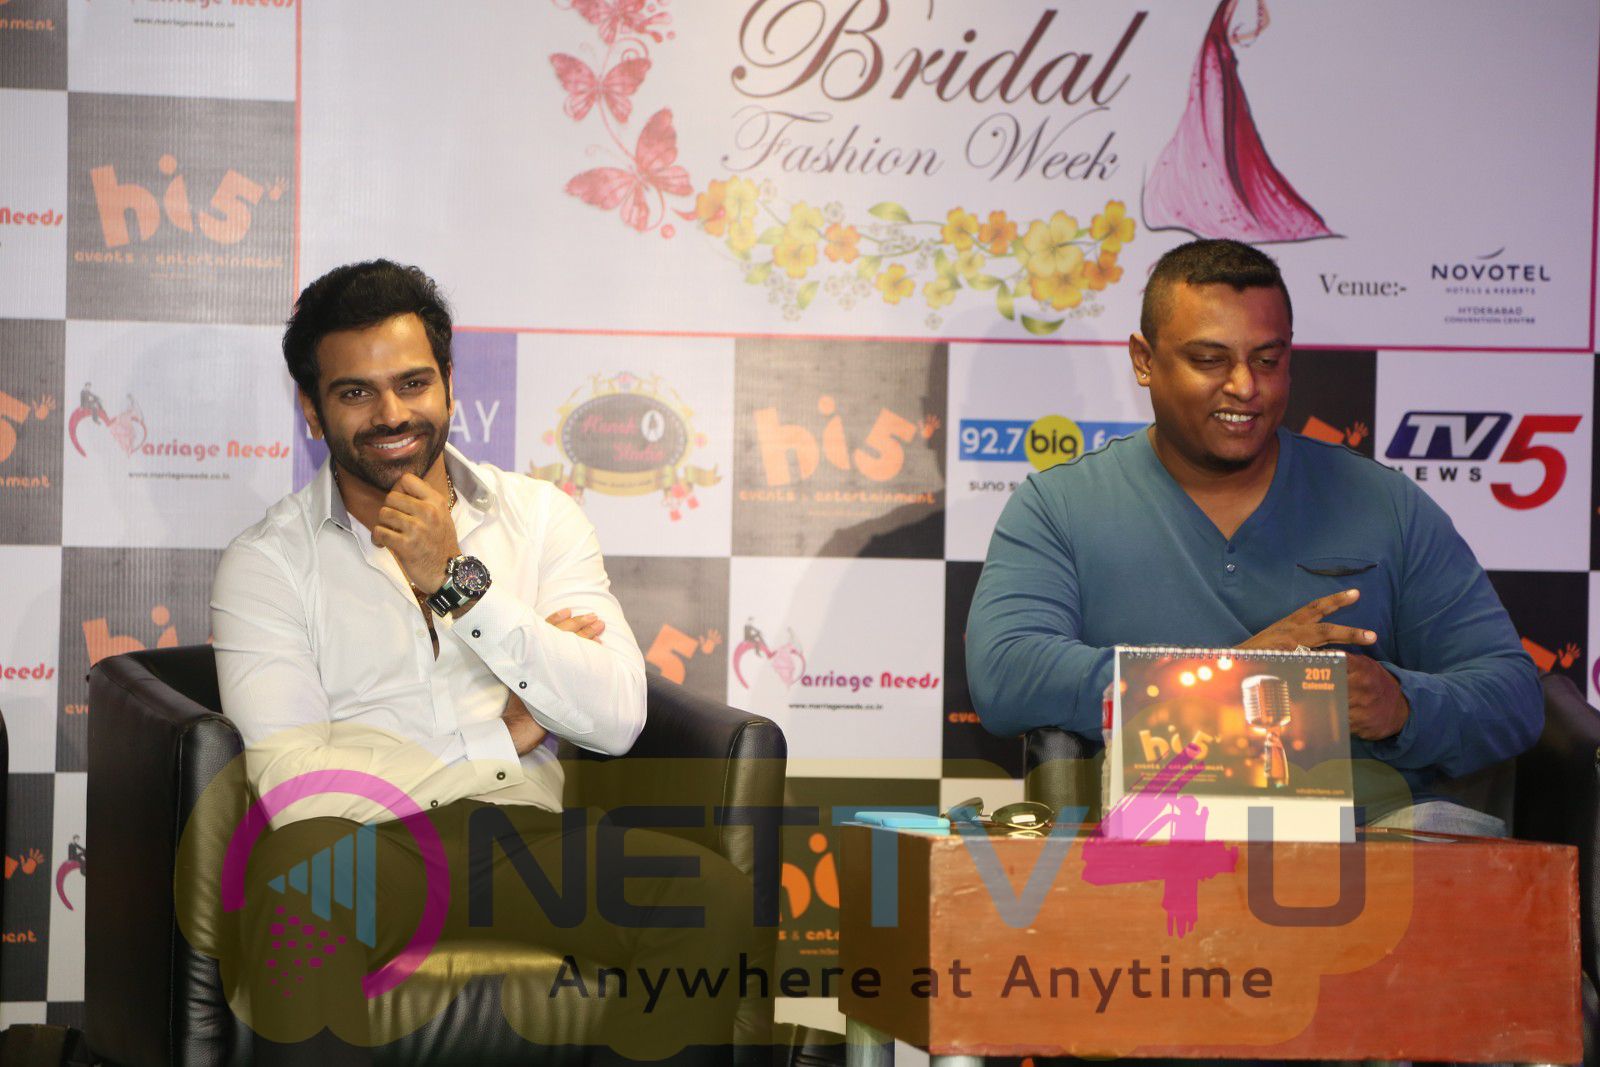 Marriage Needs Bridal Fashion Week 2017 Logo Launch Cute Photos Telugu Gallery